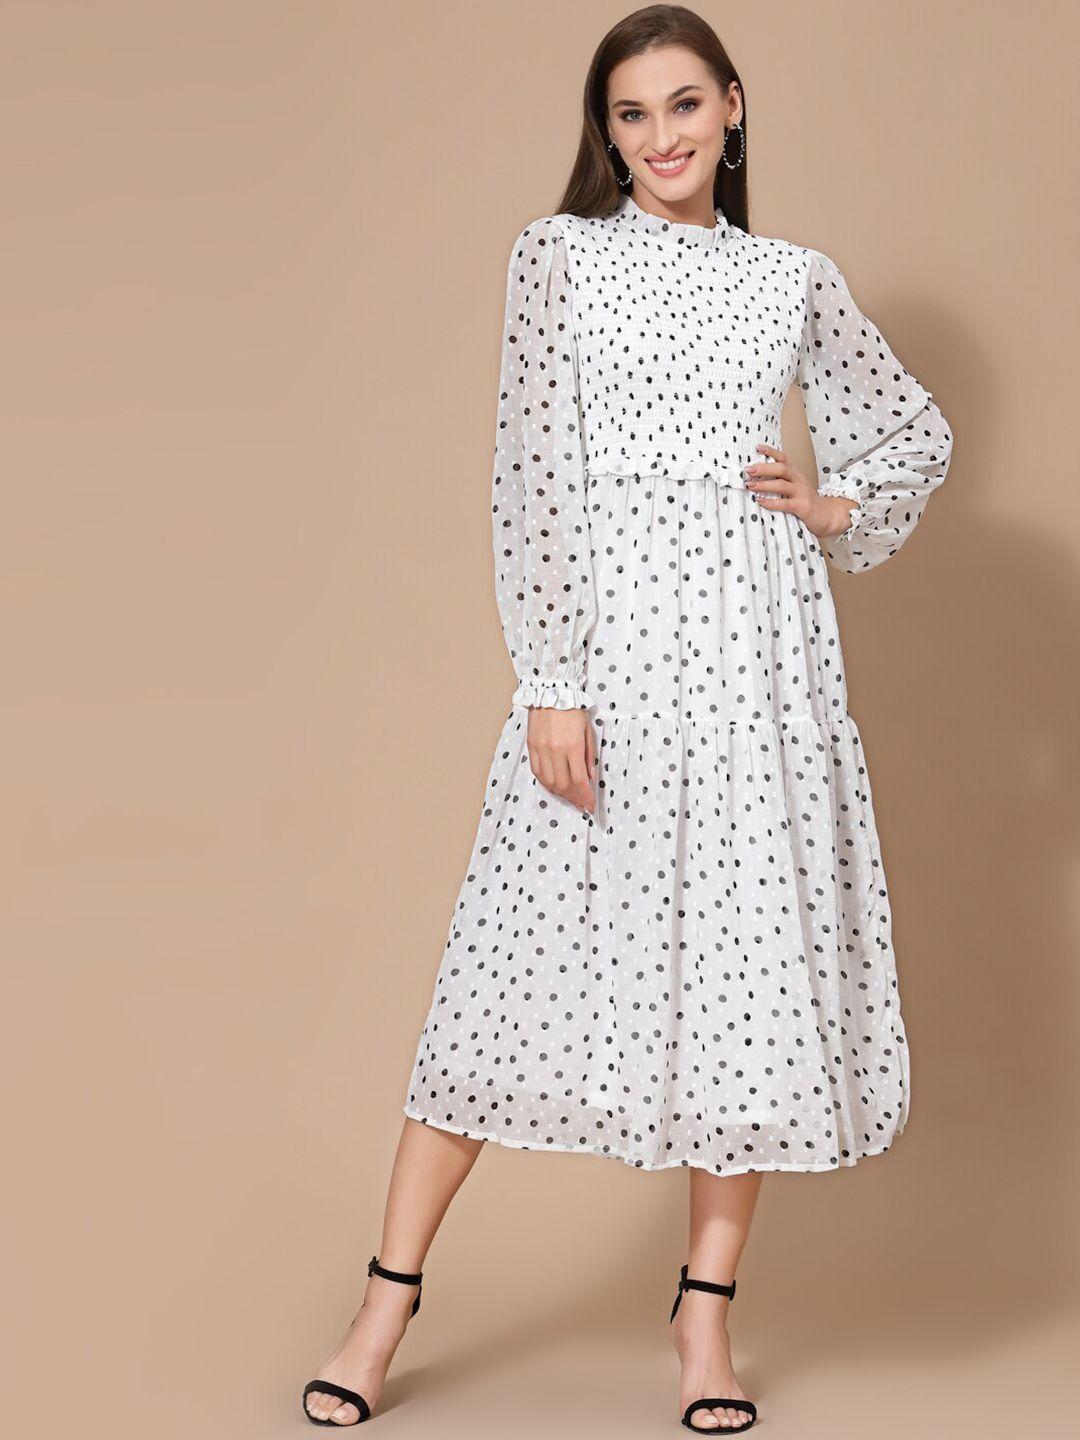 strong and brave polka dot printed smocked chiffon a-line dress